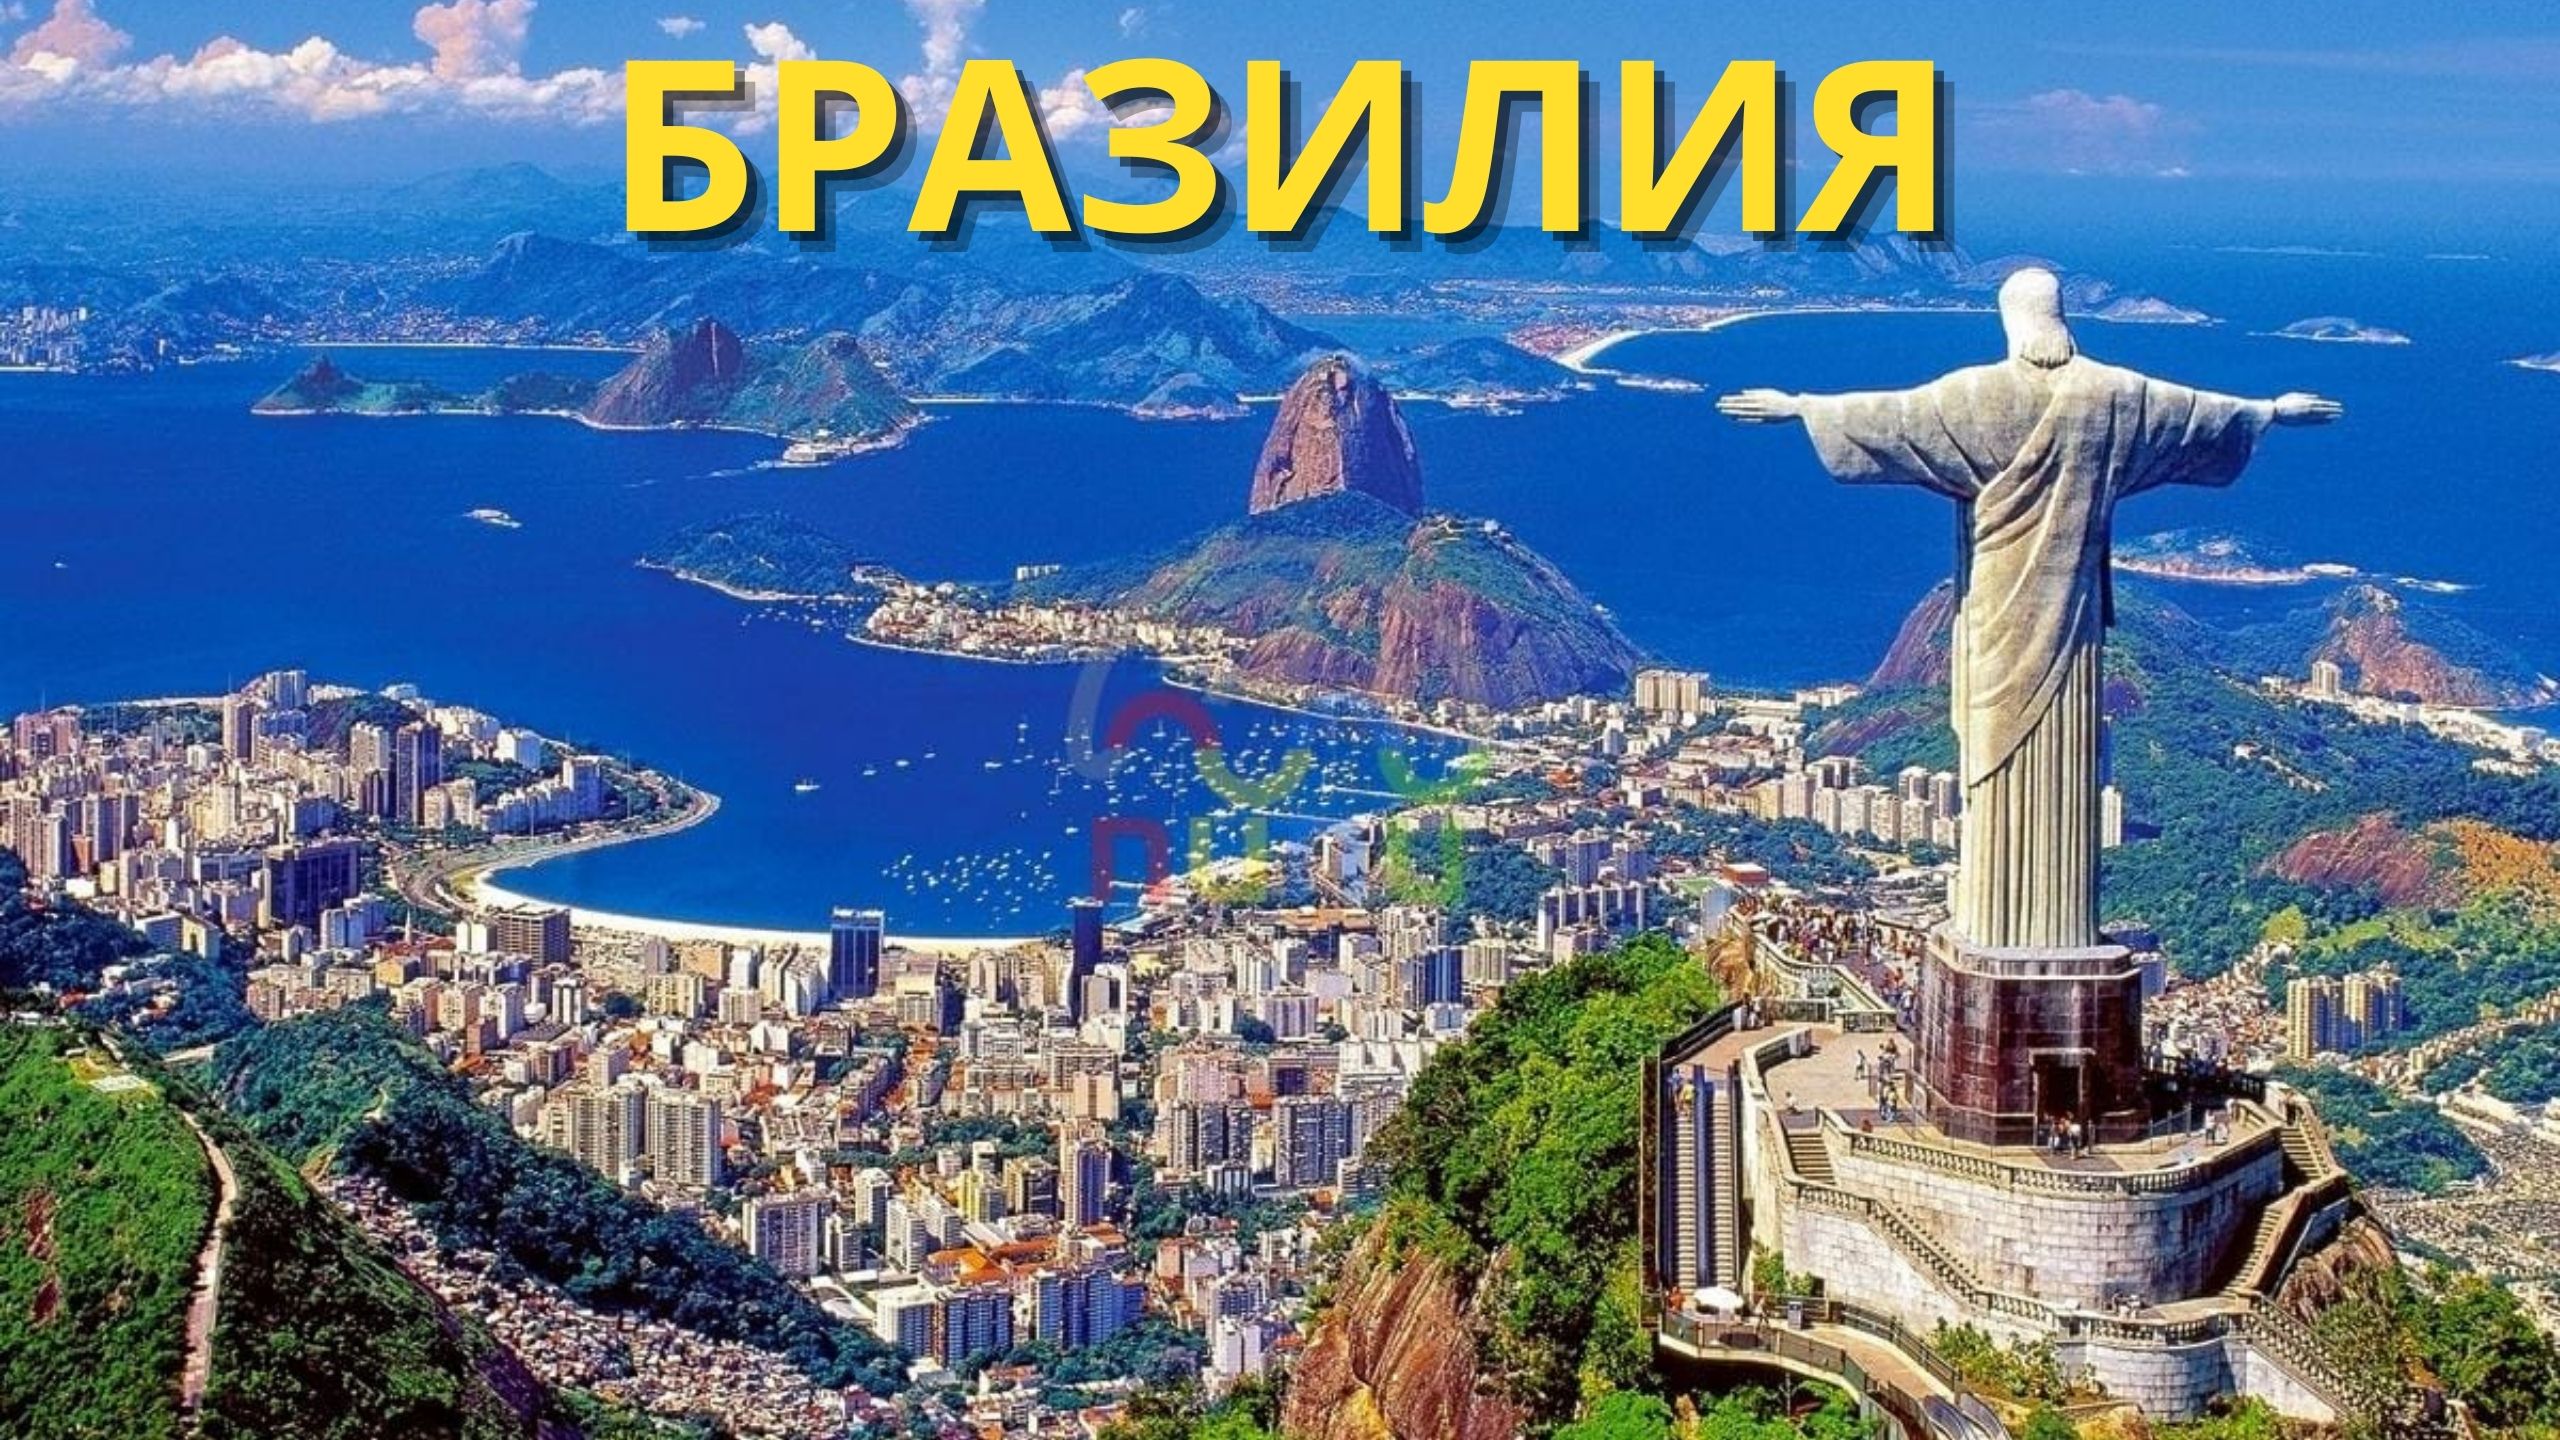 Бразилия - секреты красоты - Великая и огромная Бразилия - Путешествие в Бразилию